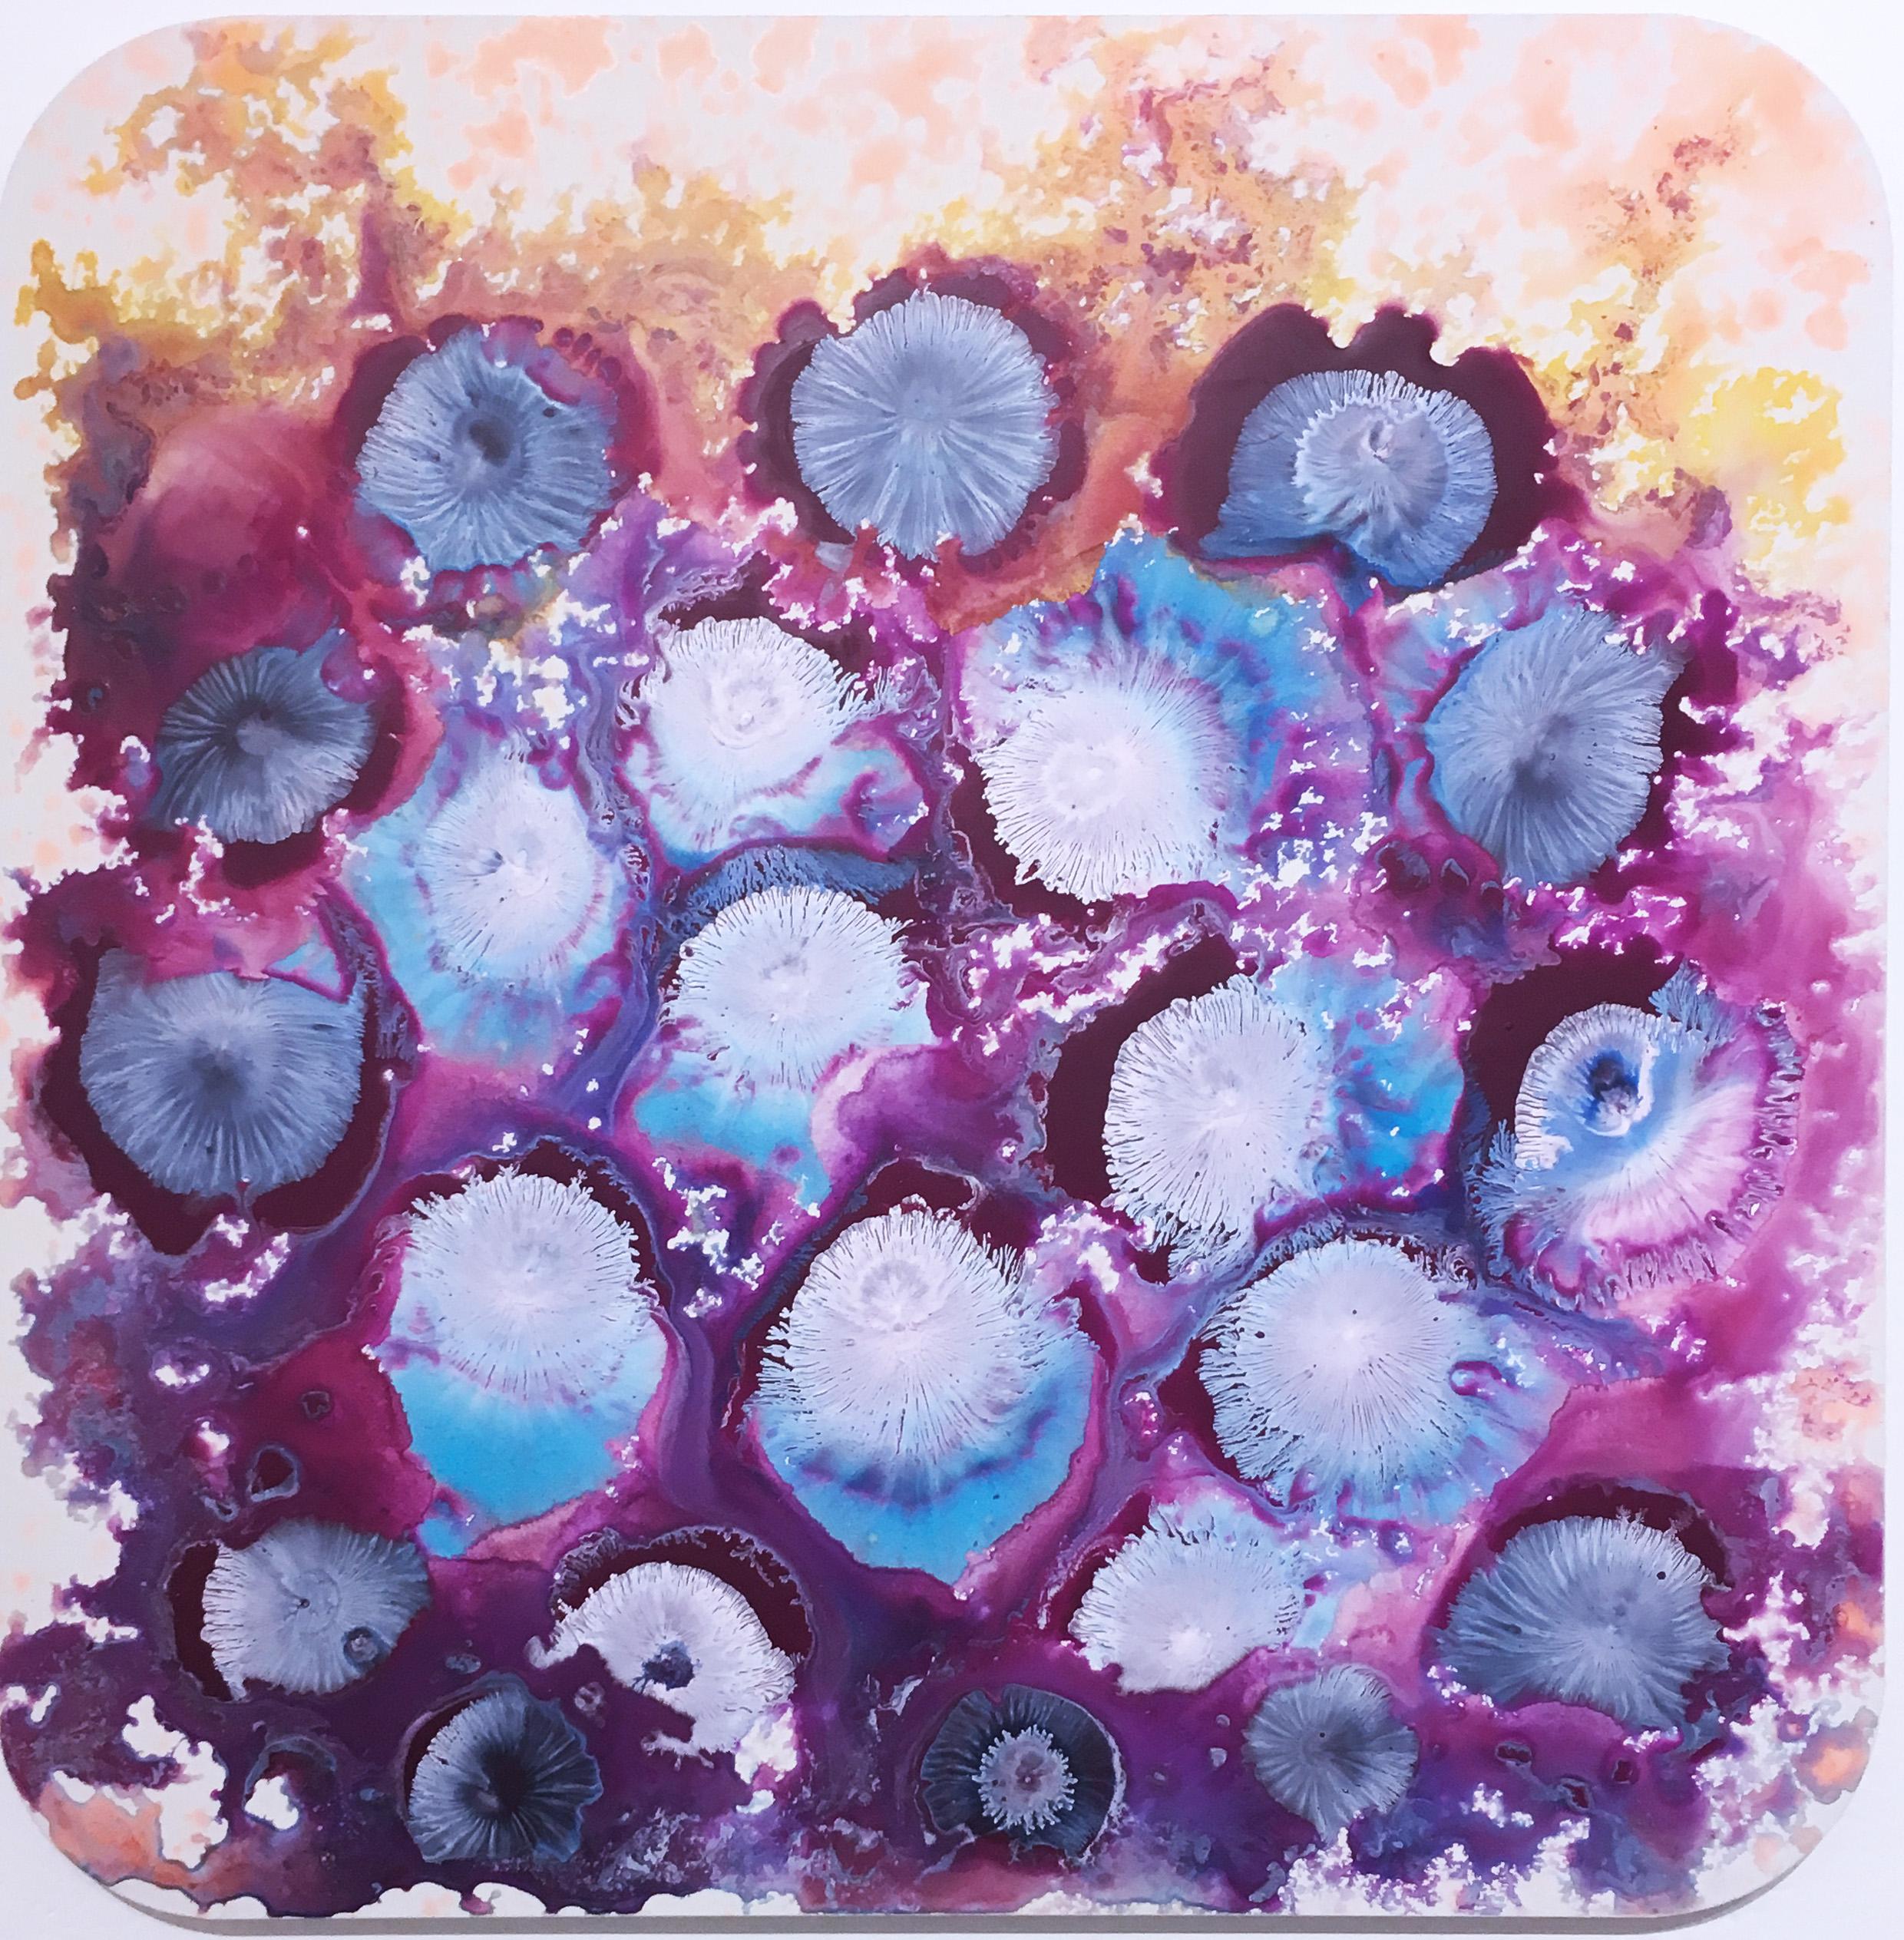 SOL 2, 2018, abstraction figurative, floral, jaune, rose, rouge. Émail à base d'eau sur panneau d'aluminium. Tiré de la série Subatomic Origami Landscape de l'artiste.